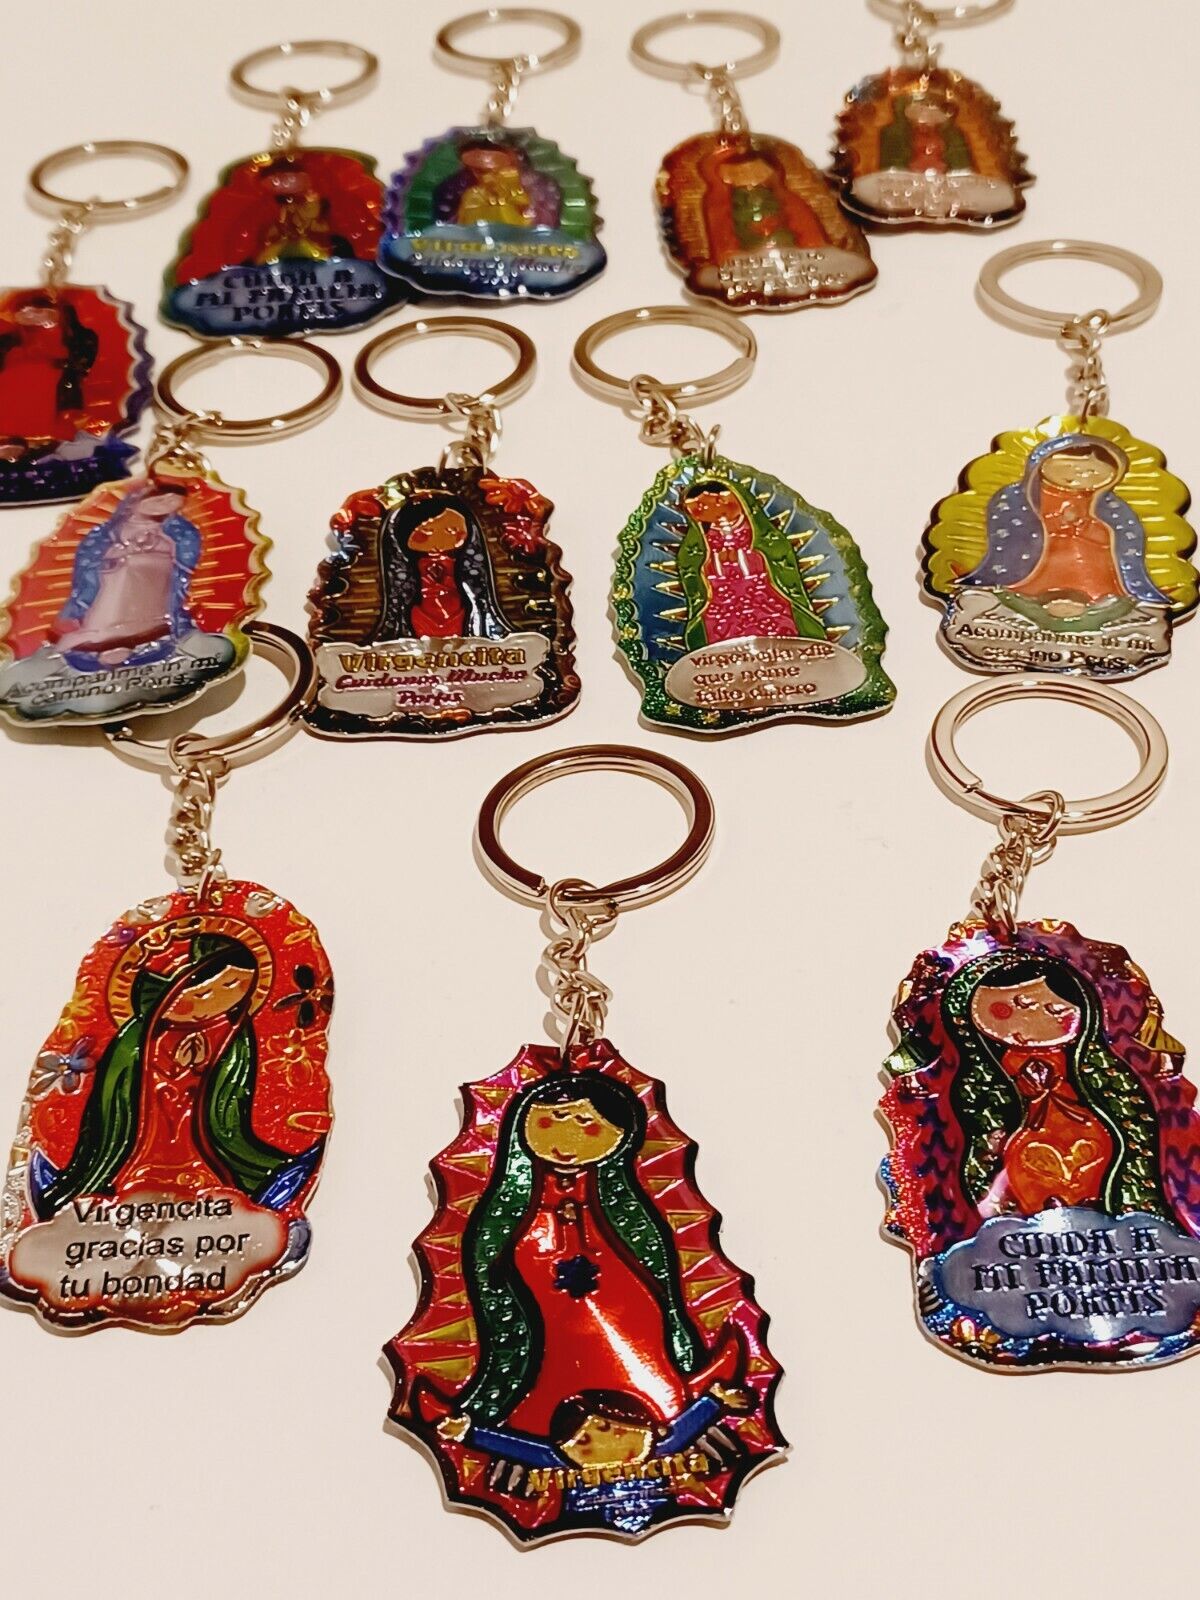 12 Virgencita Guadalupe Keychain Favors Communion Recuerdos Llaveros Bautizo New